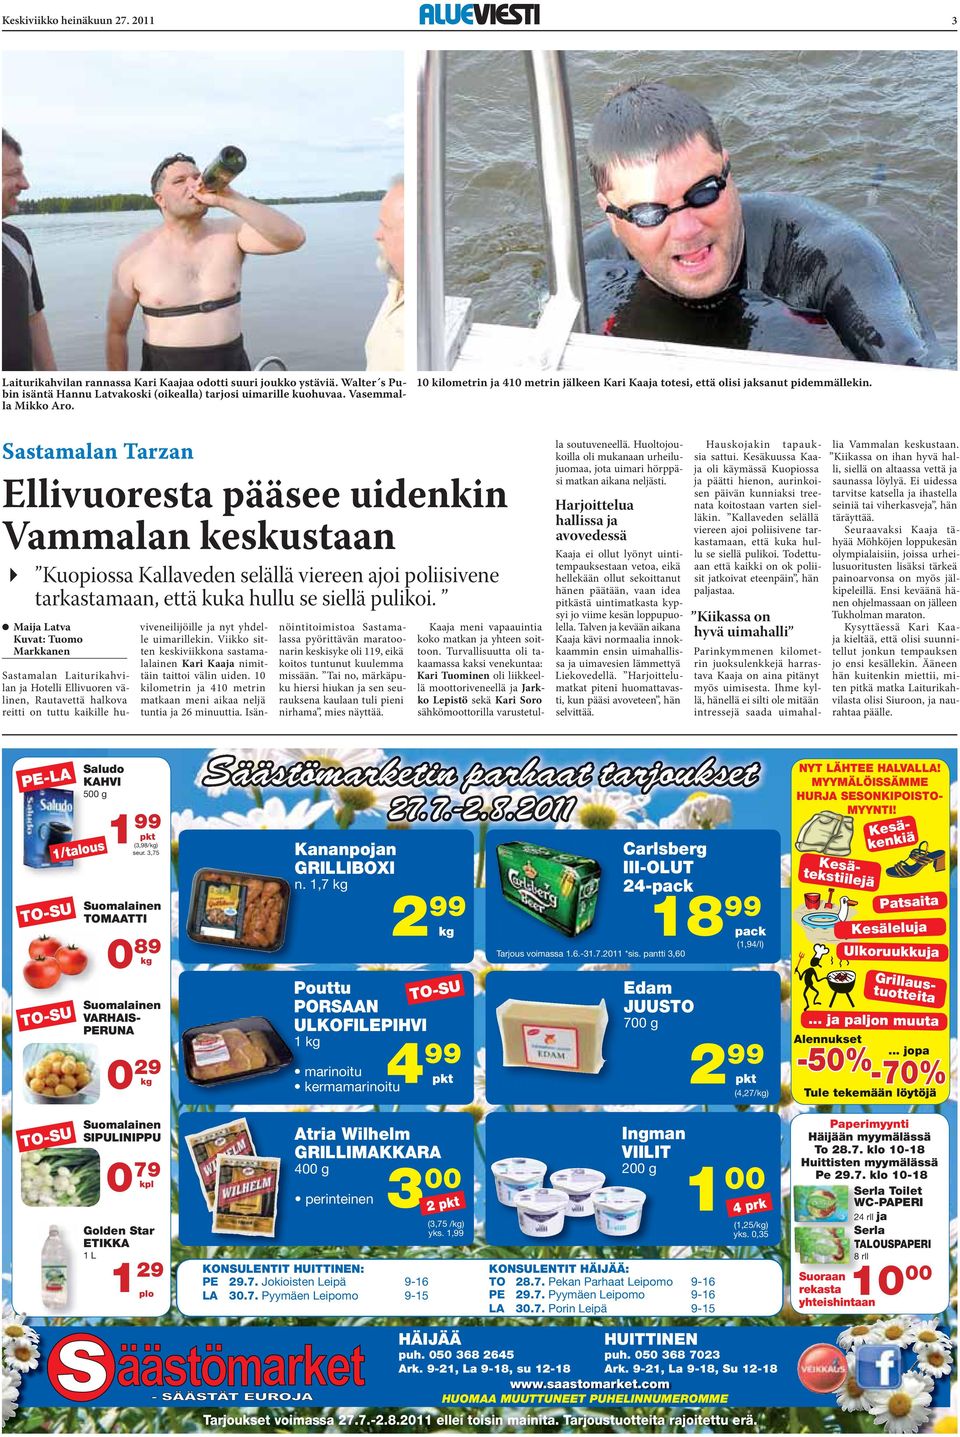 Sastamalan Tarzan Ellivuoresta pääsee uidenkin Vammalan keskustaan " Kuopiossa Kallaveden selällä viereen ajoi poliisivene tarkastamaan, että kuka hullu se siellä pulikoi.